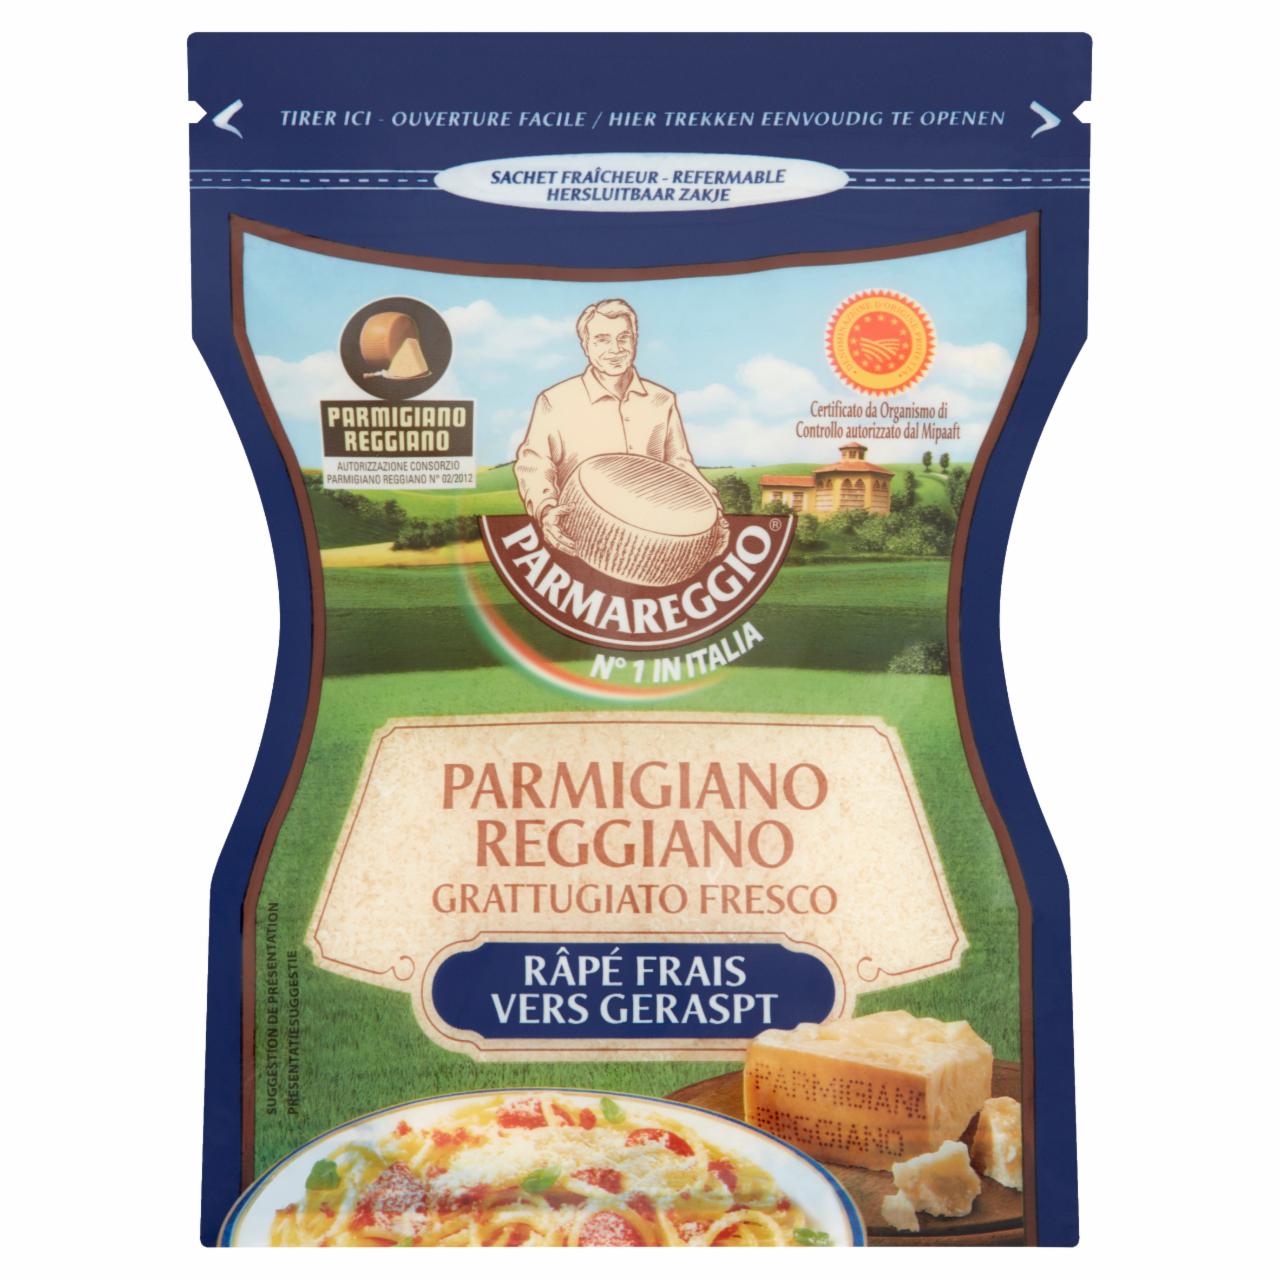 Képek - Parmareggio Parmigiano Reggiano OEM félzsíros reszelt kemény sajt 60 g